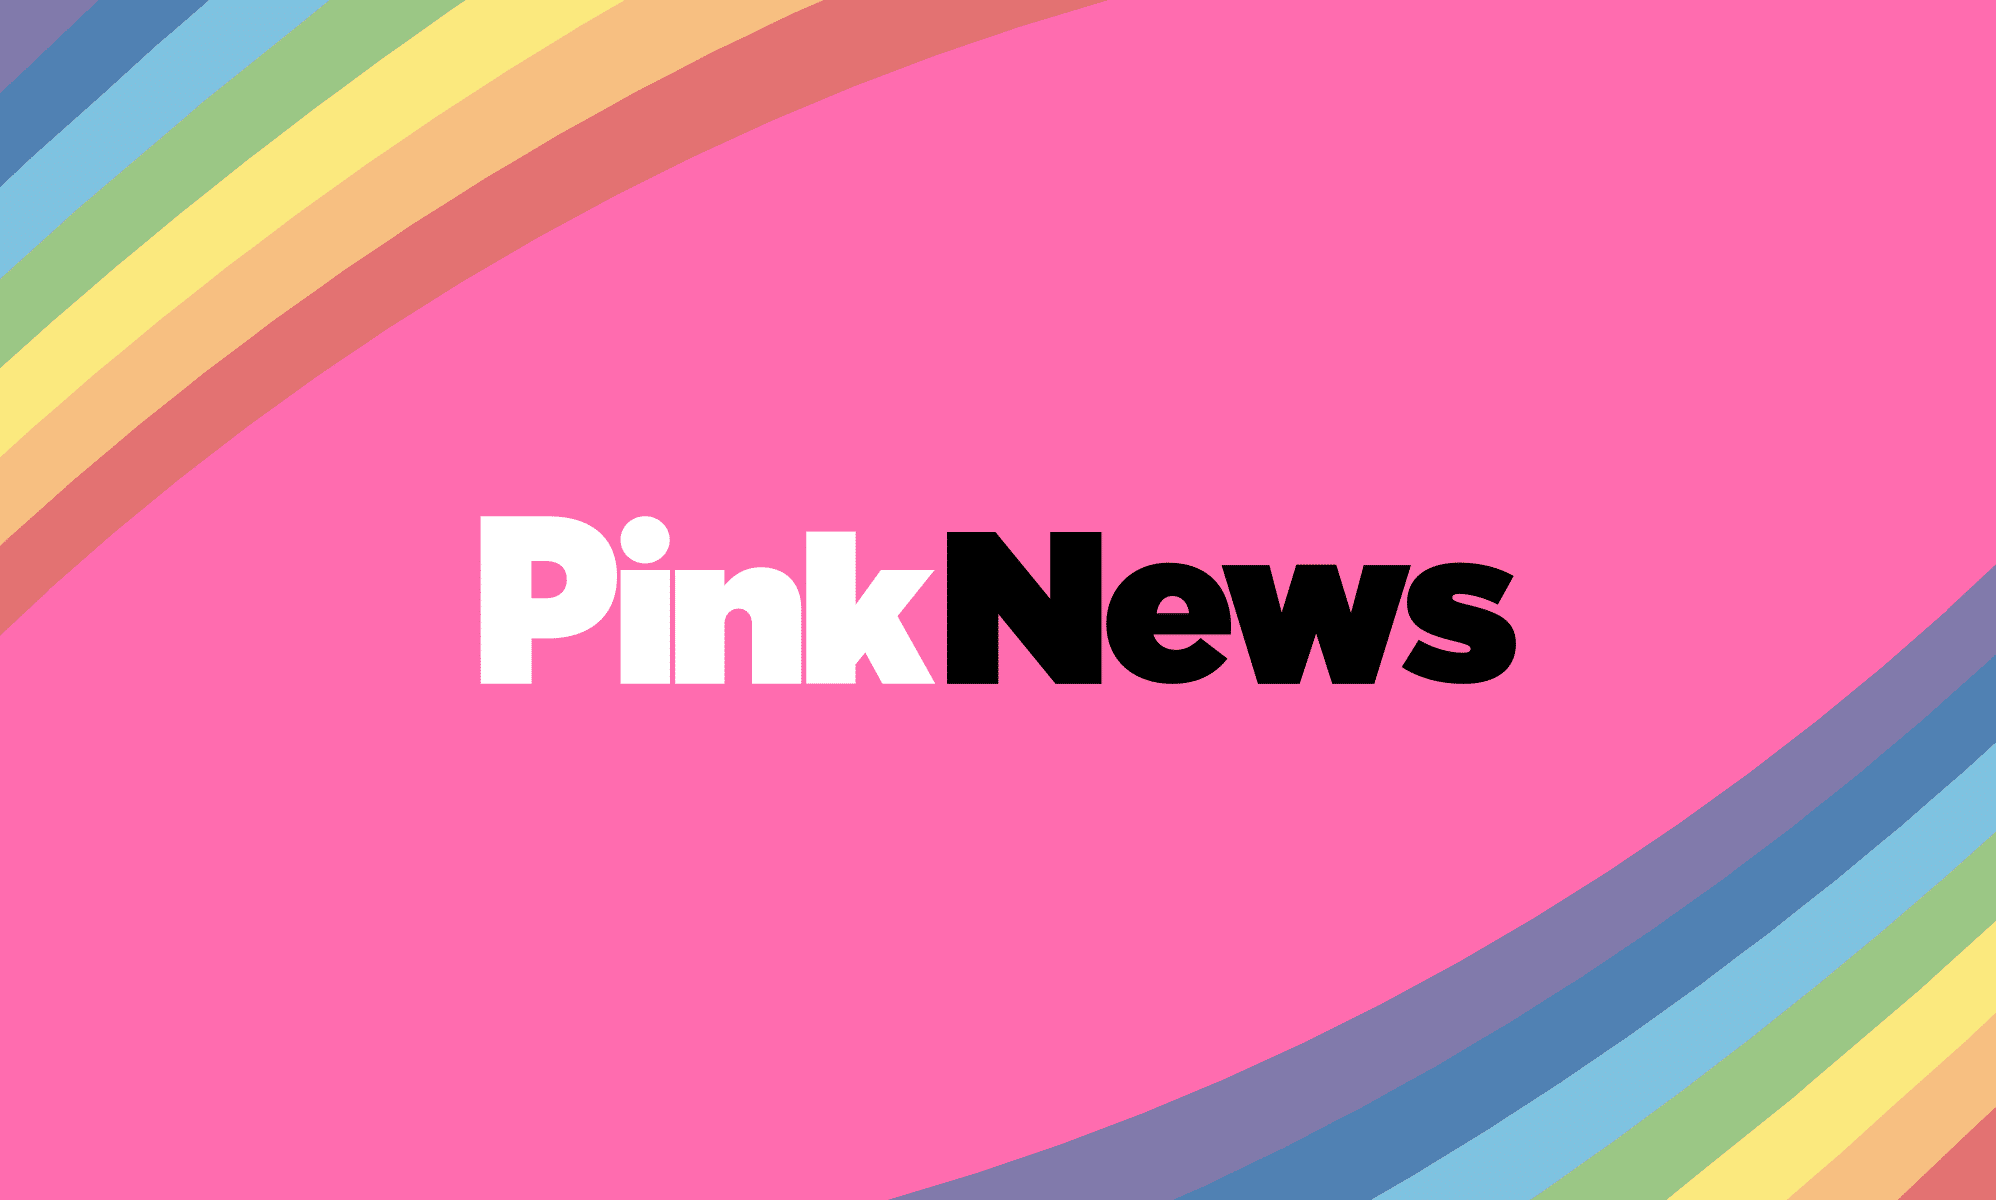 www.pinknews.co.uk